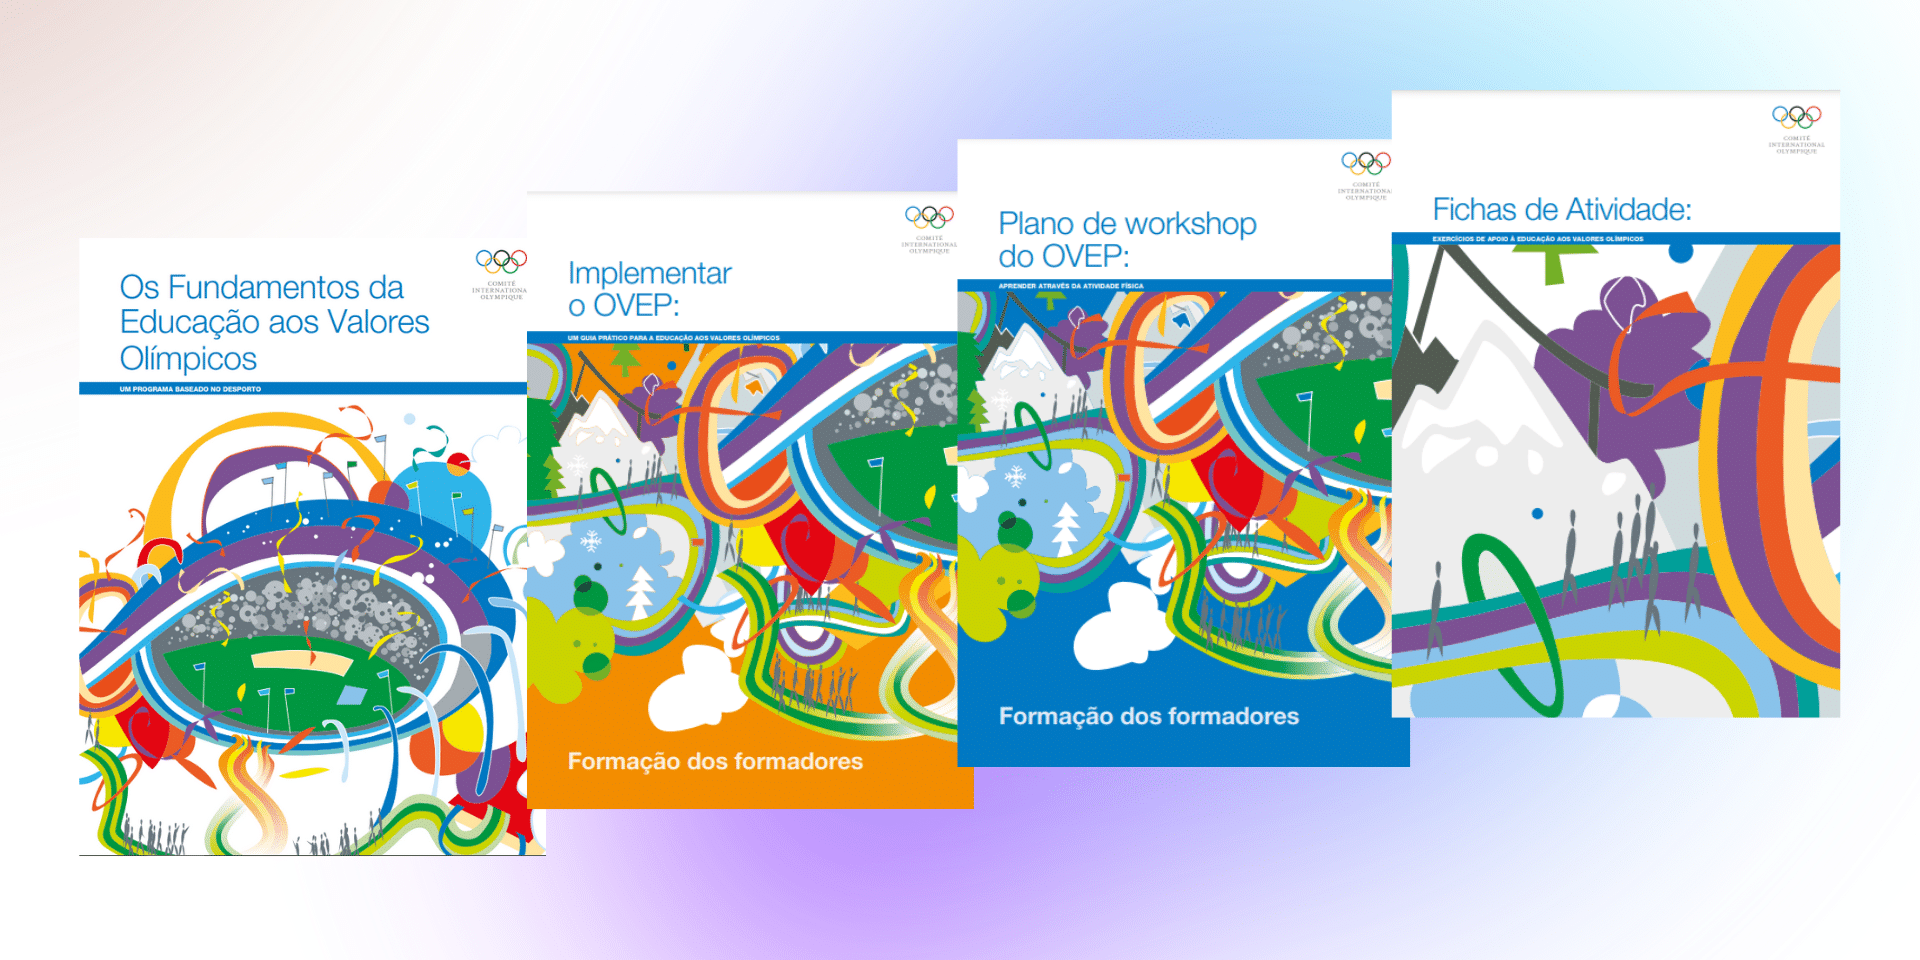 Estrutura de Ensino do Programa de Educação Olímpica.